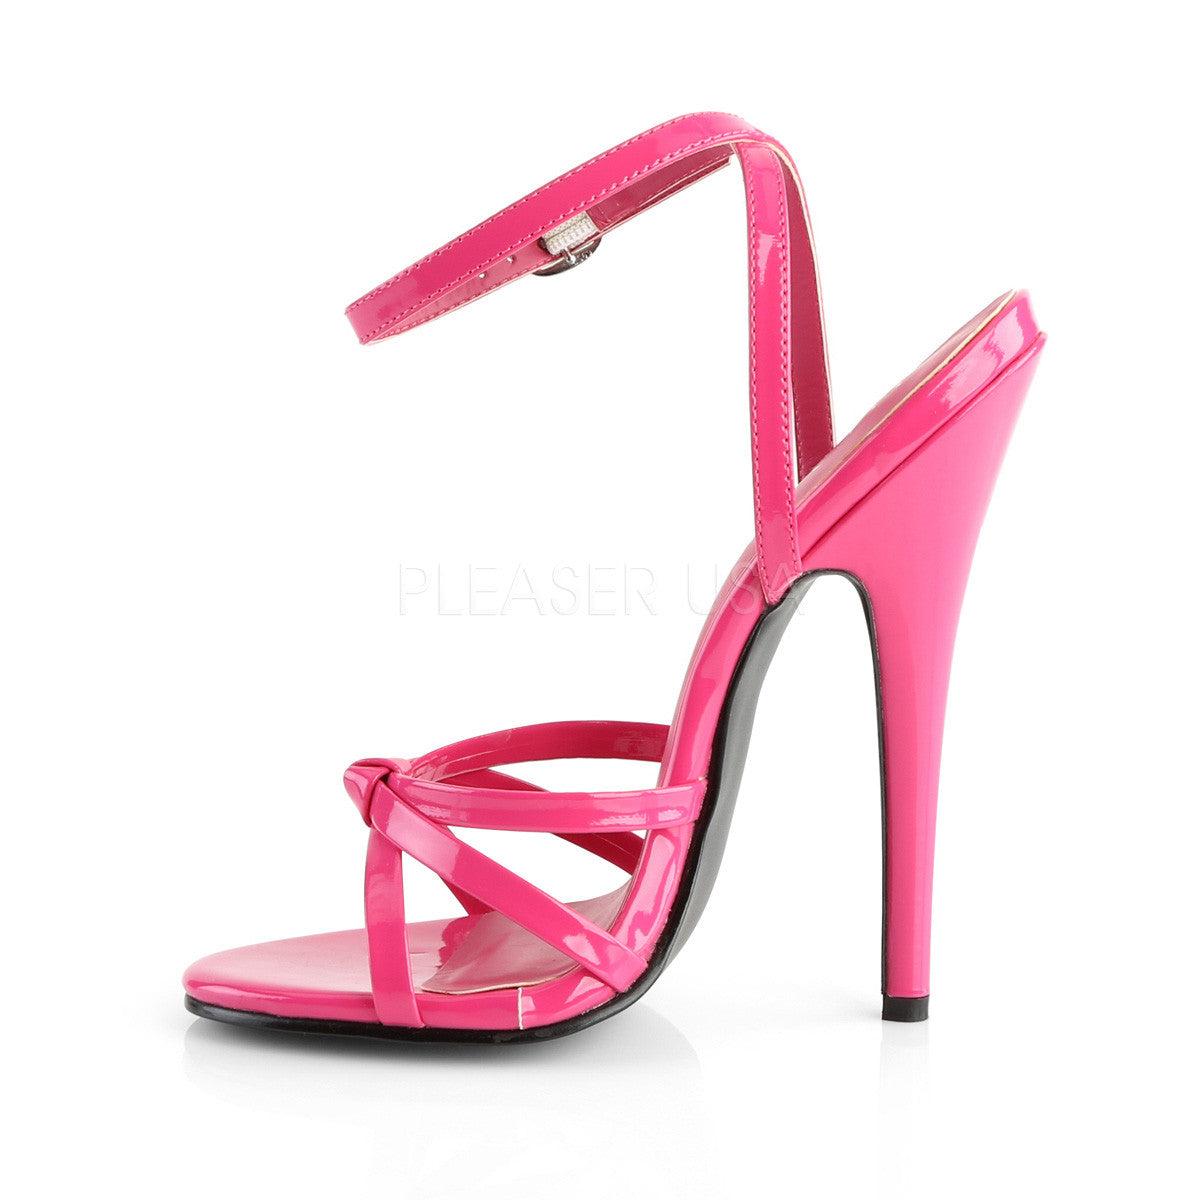 6" Heel DOMINA-108 Hot Pink